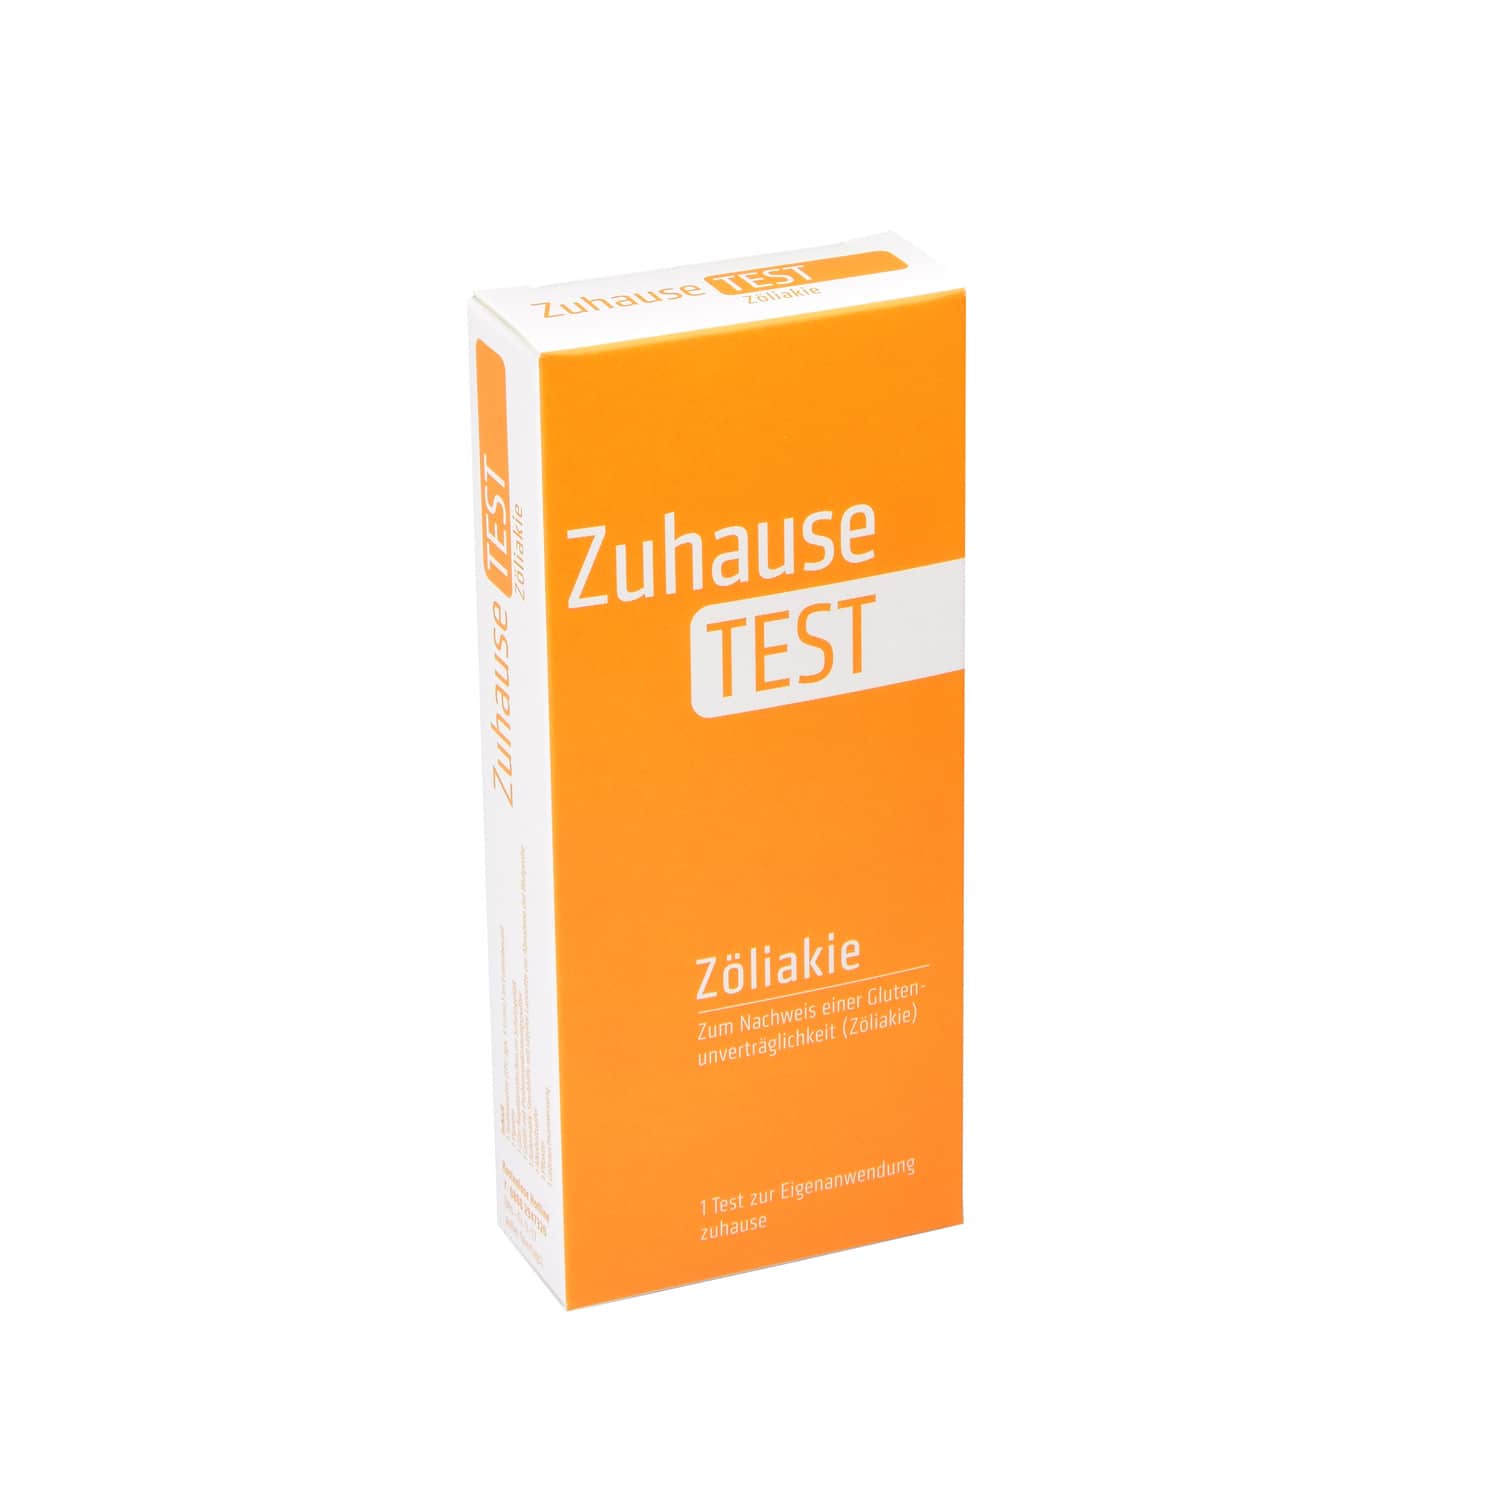 Zuhause Test Coeliac - Gluten Test   Immunochromatographic Rapid Test